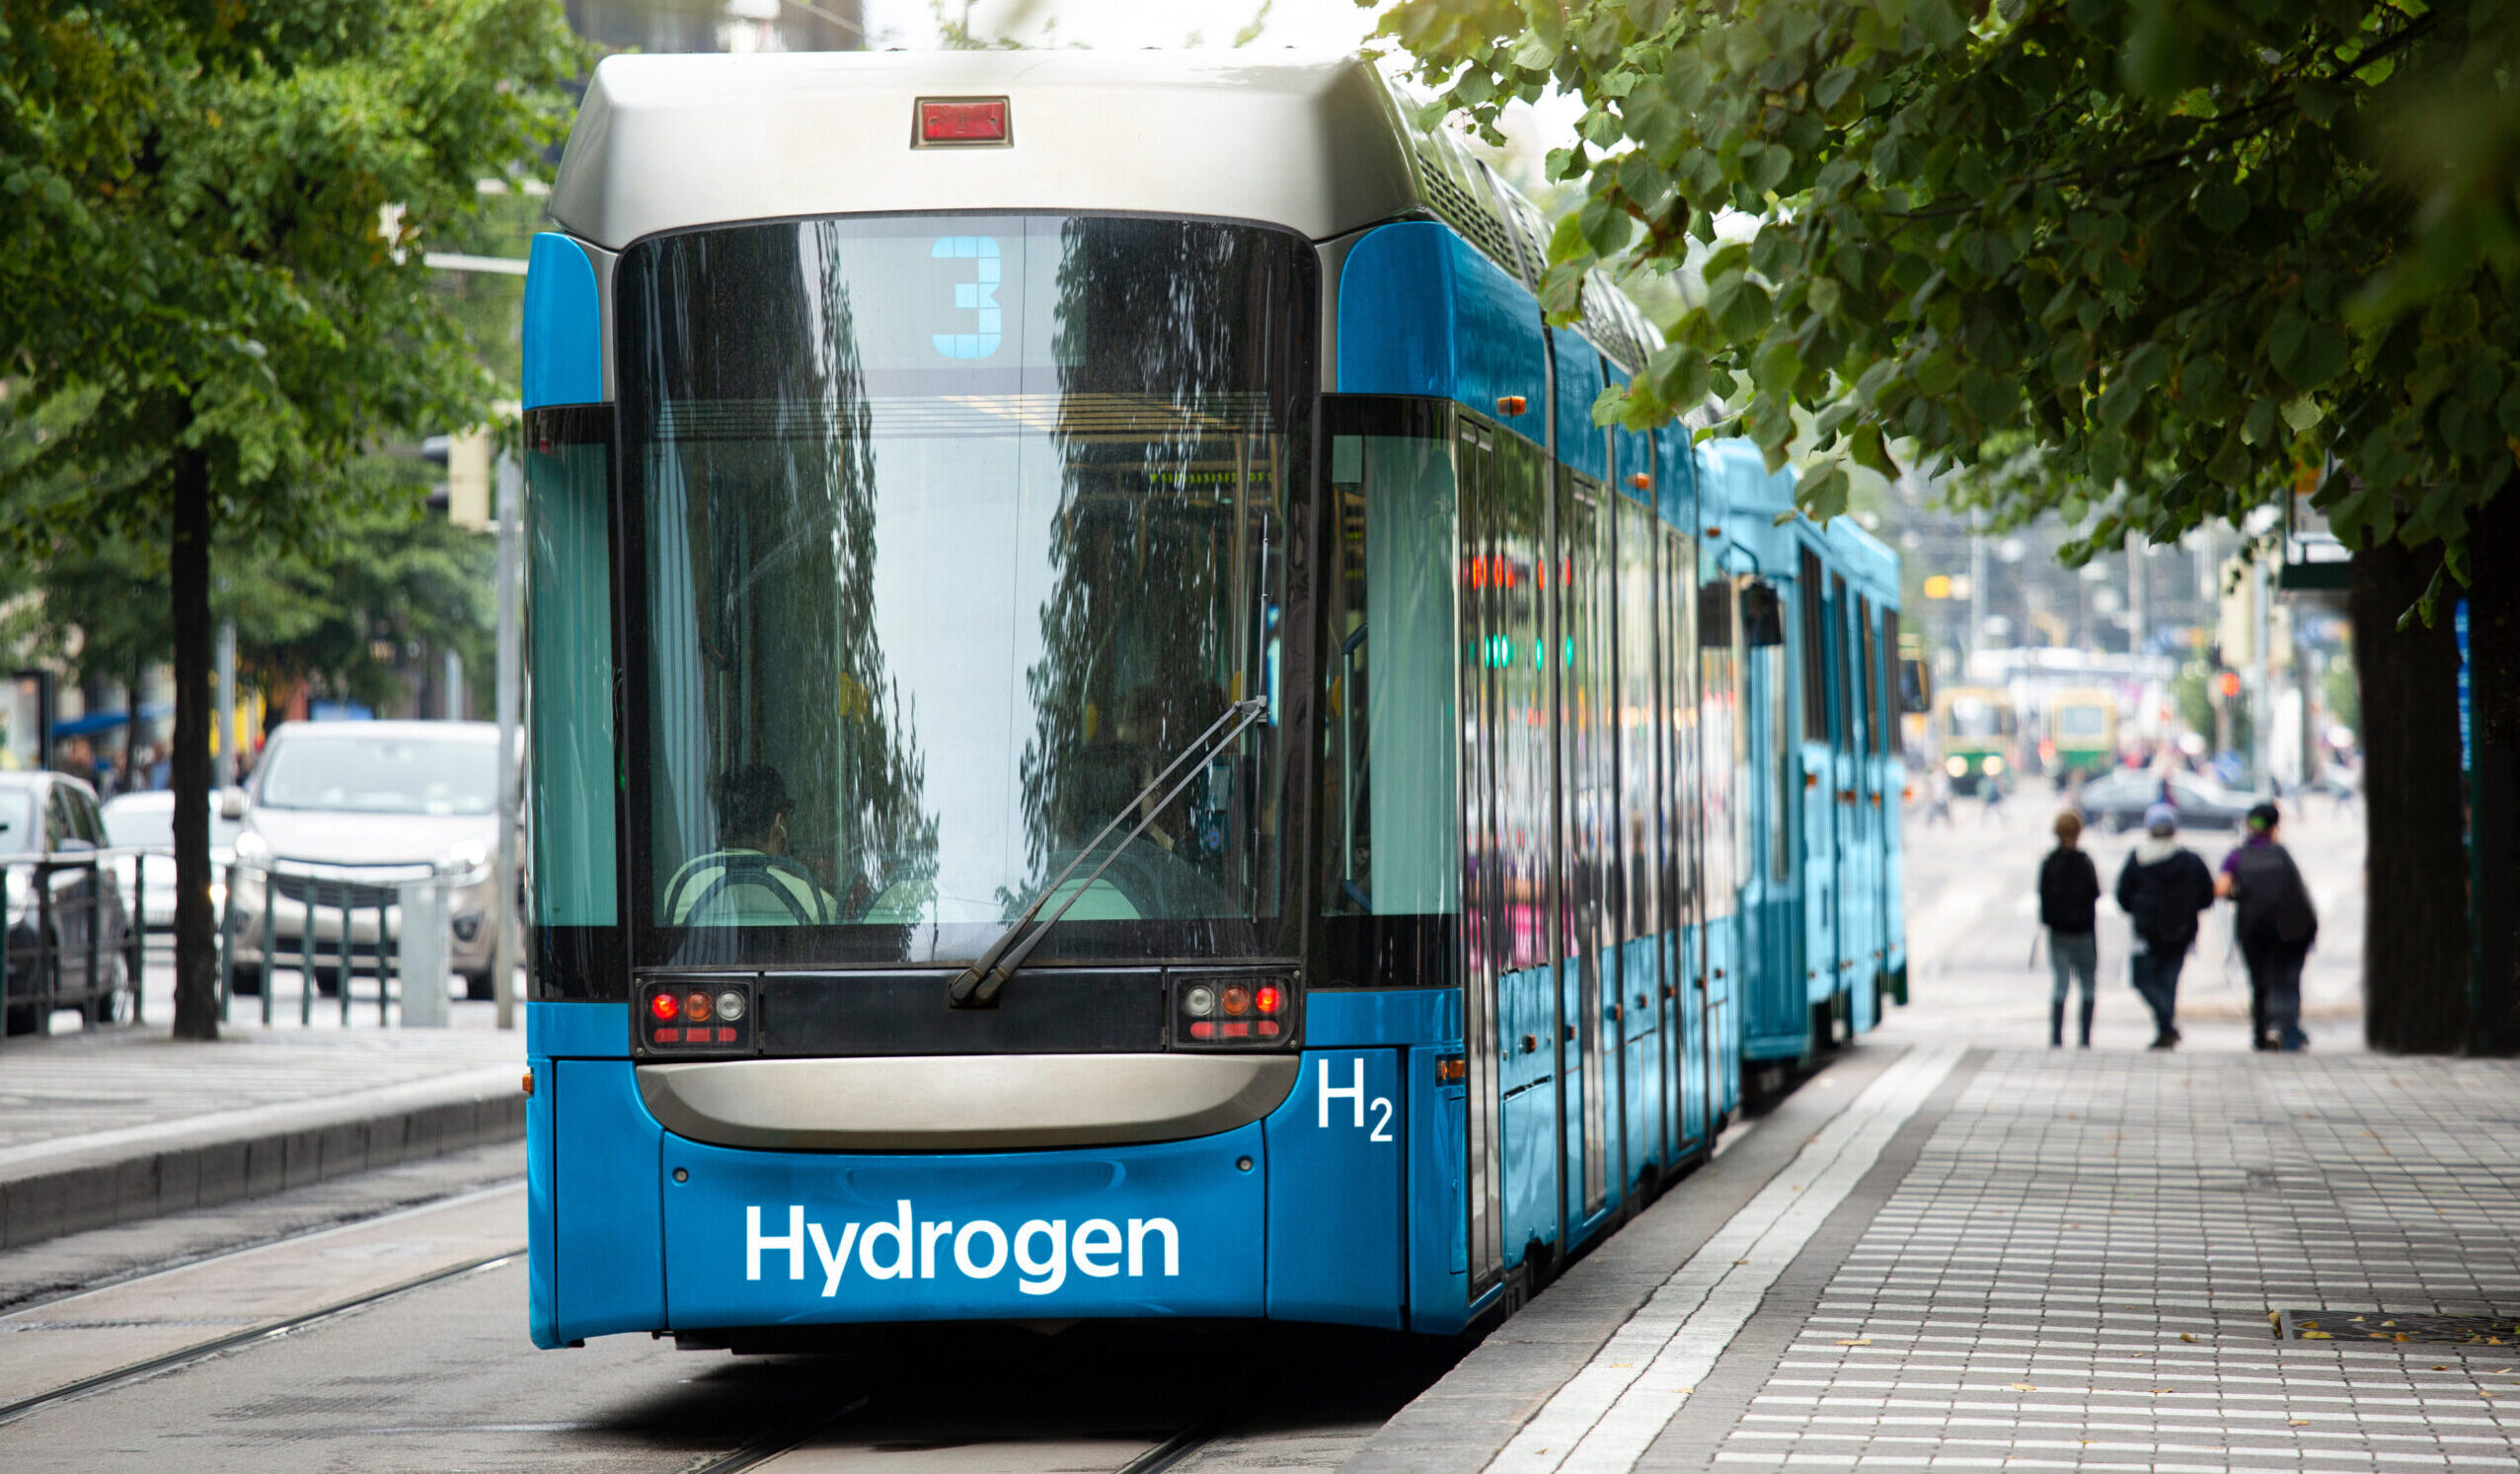 immagine di un tram a idrogeno in città